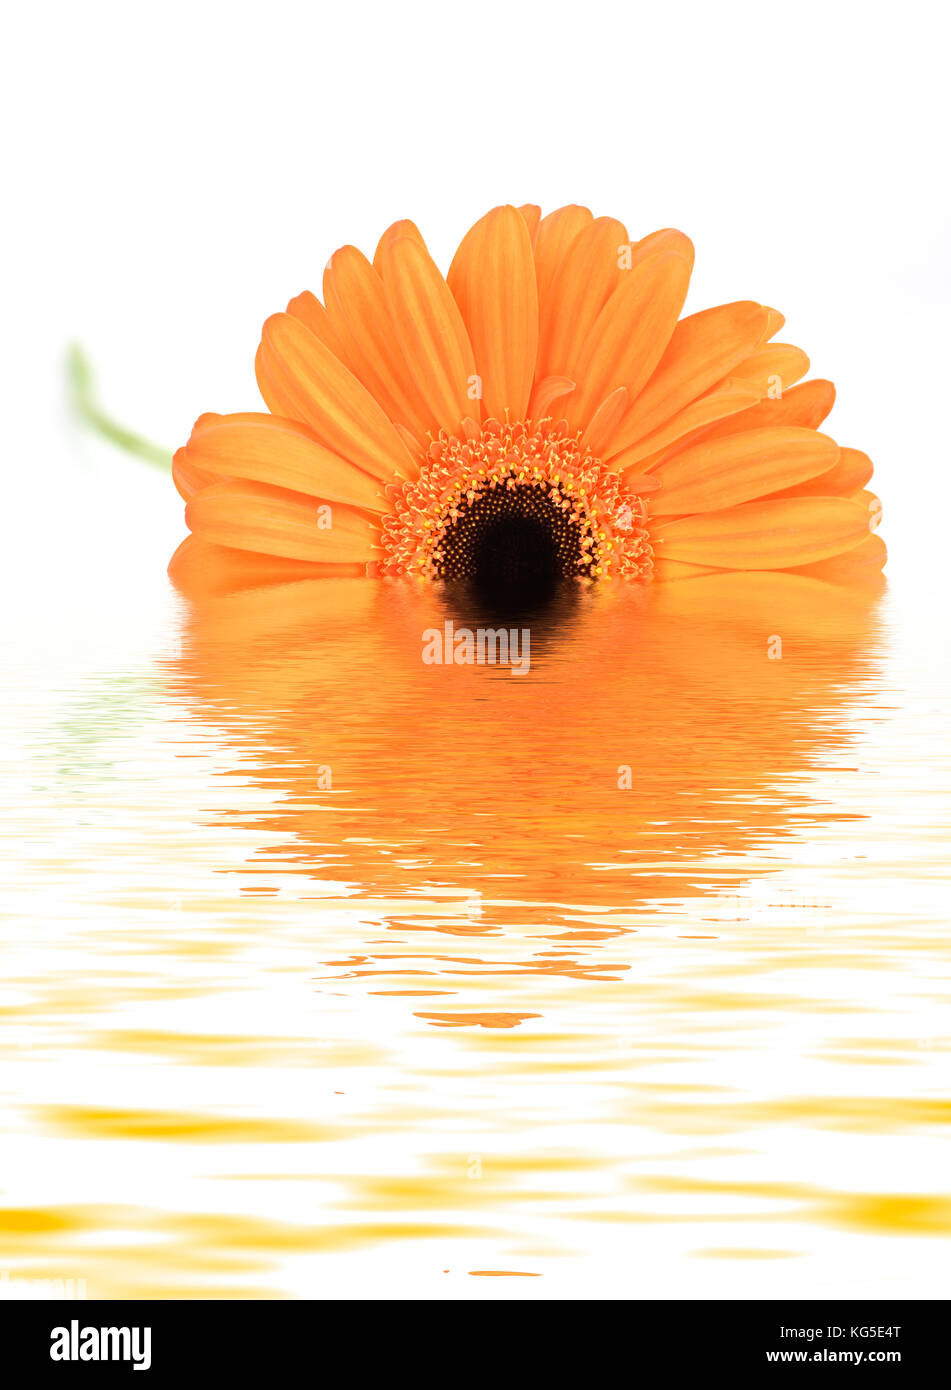 Imagen manipulada de una naranja Gerbera reflejado en el agua Foto de stock